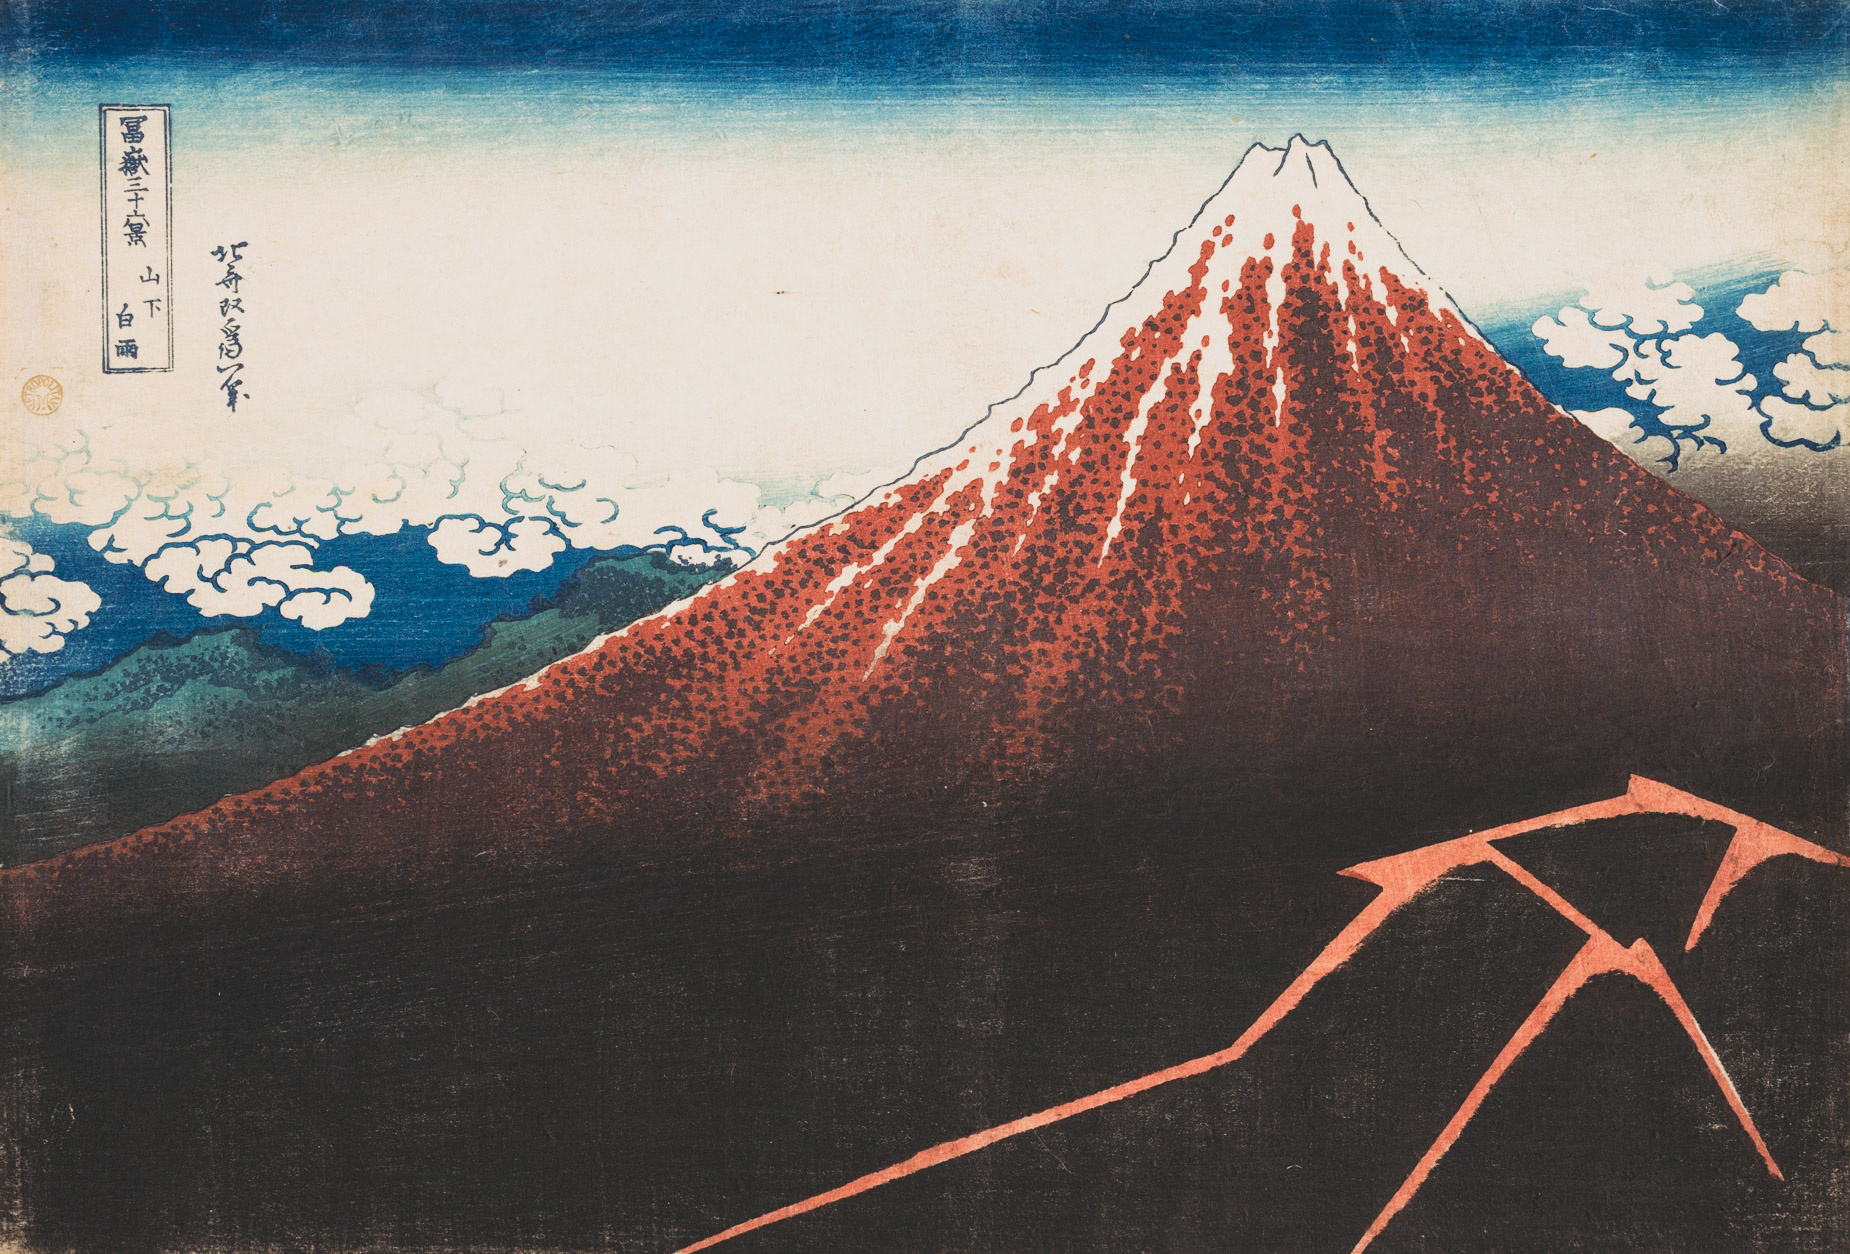 Storm below Mount Fuji (Sanka no haku u) by Katsushika Hokusai, ca. 1830-32. Courtesy of The Metropolitan Museum.